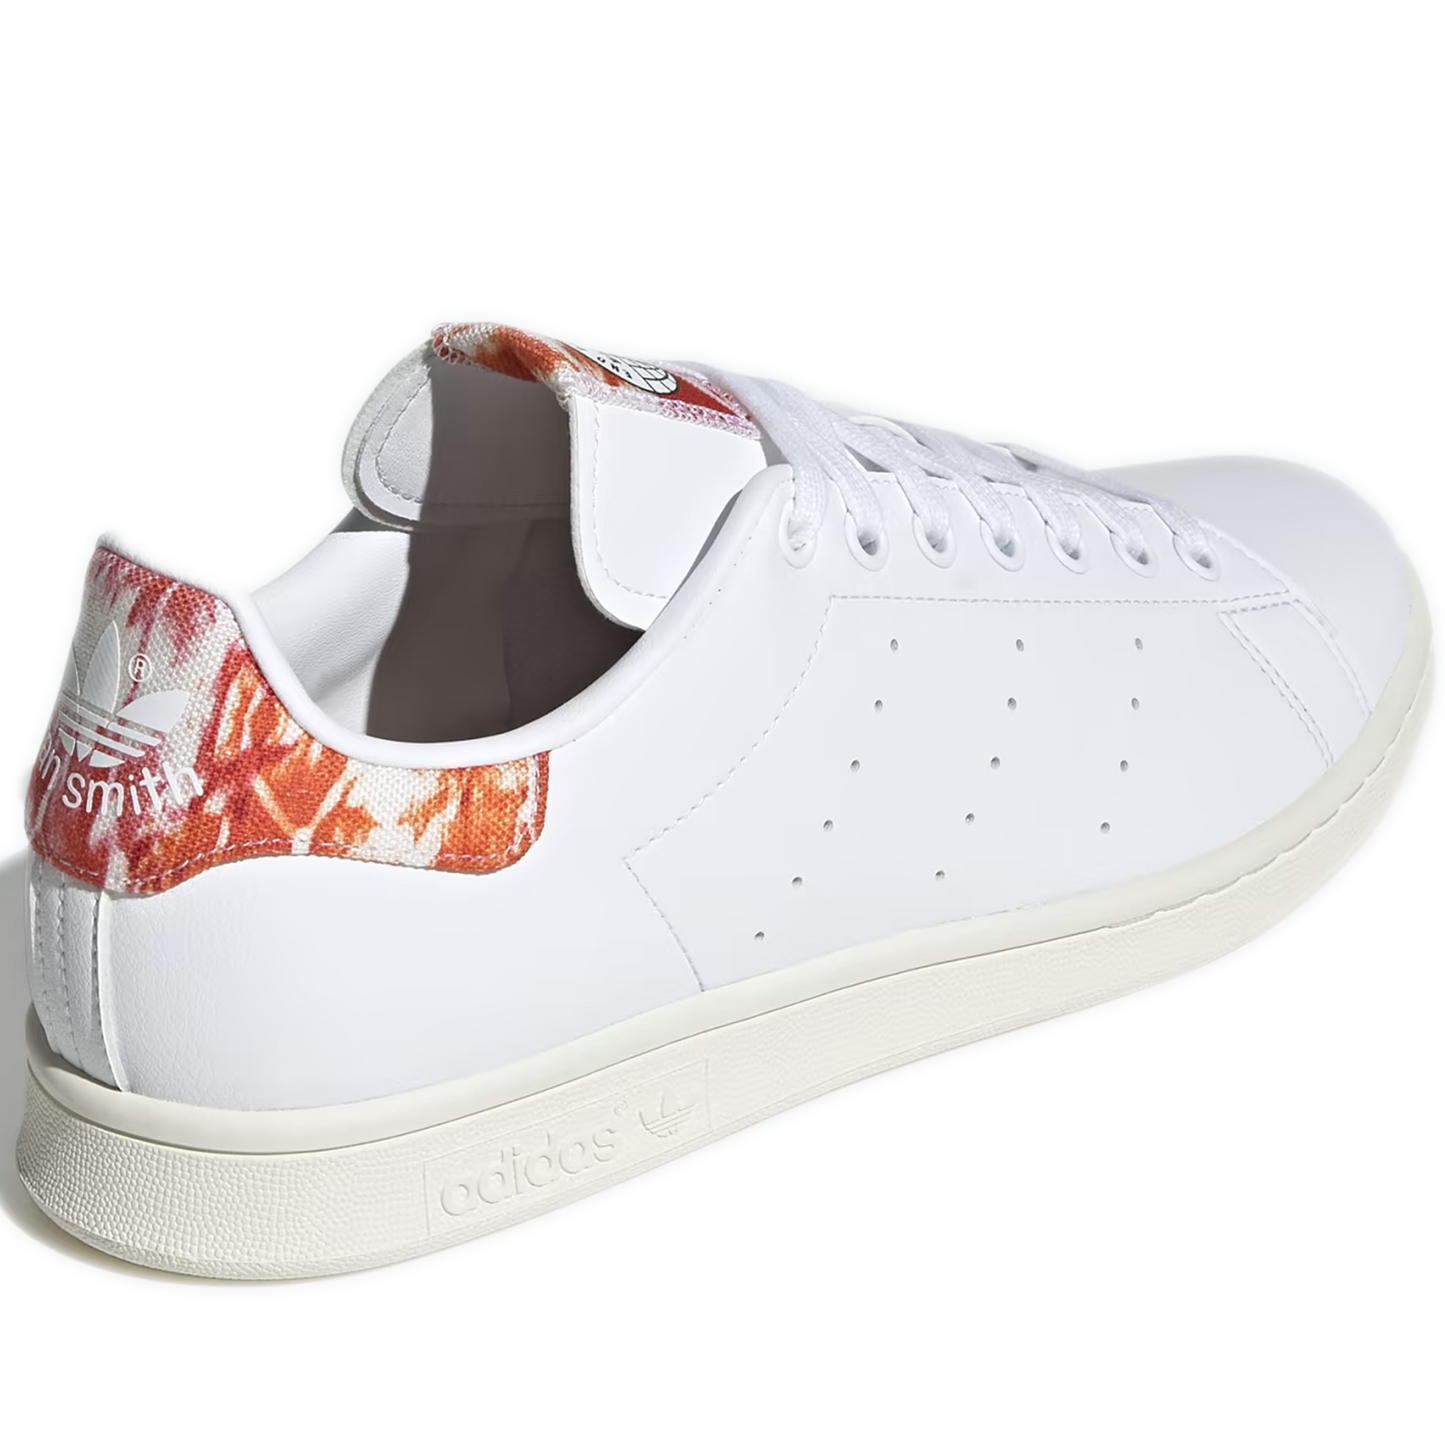 Men's Adidas Stan Smith Shoes - White/ Orange